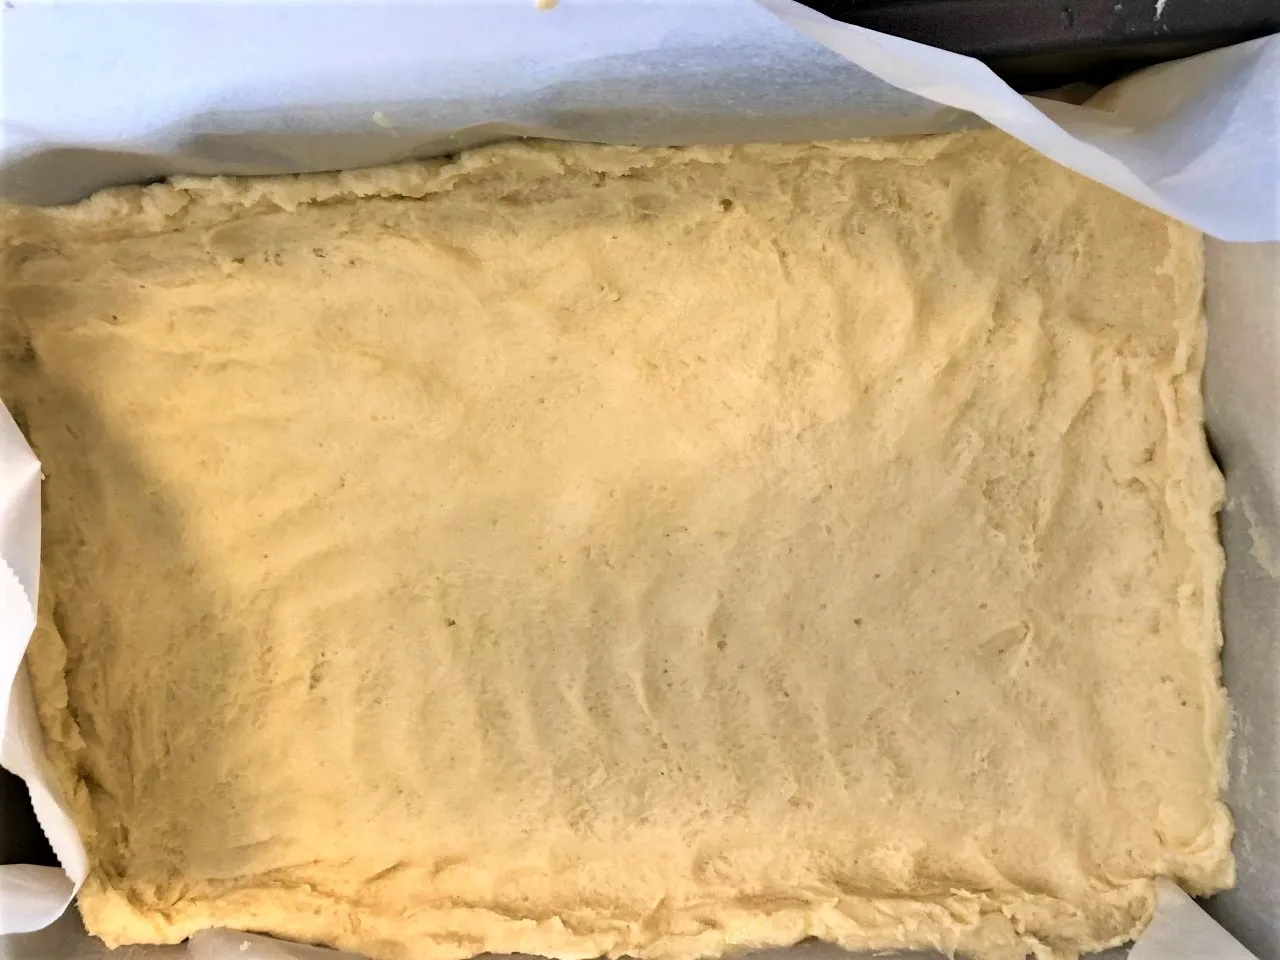 Image of dough for bottom crust of lemon bars covering the bottom of the baking sheet